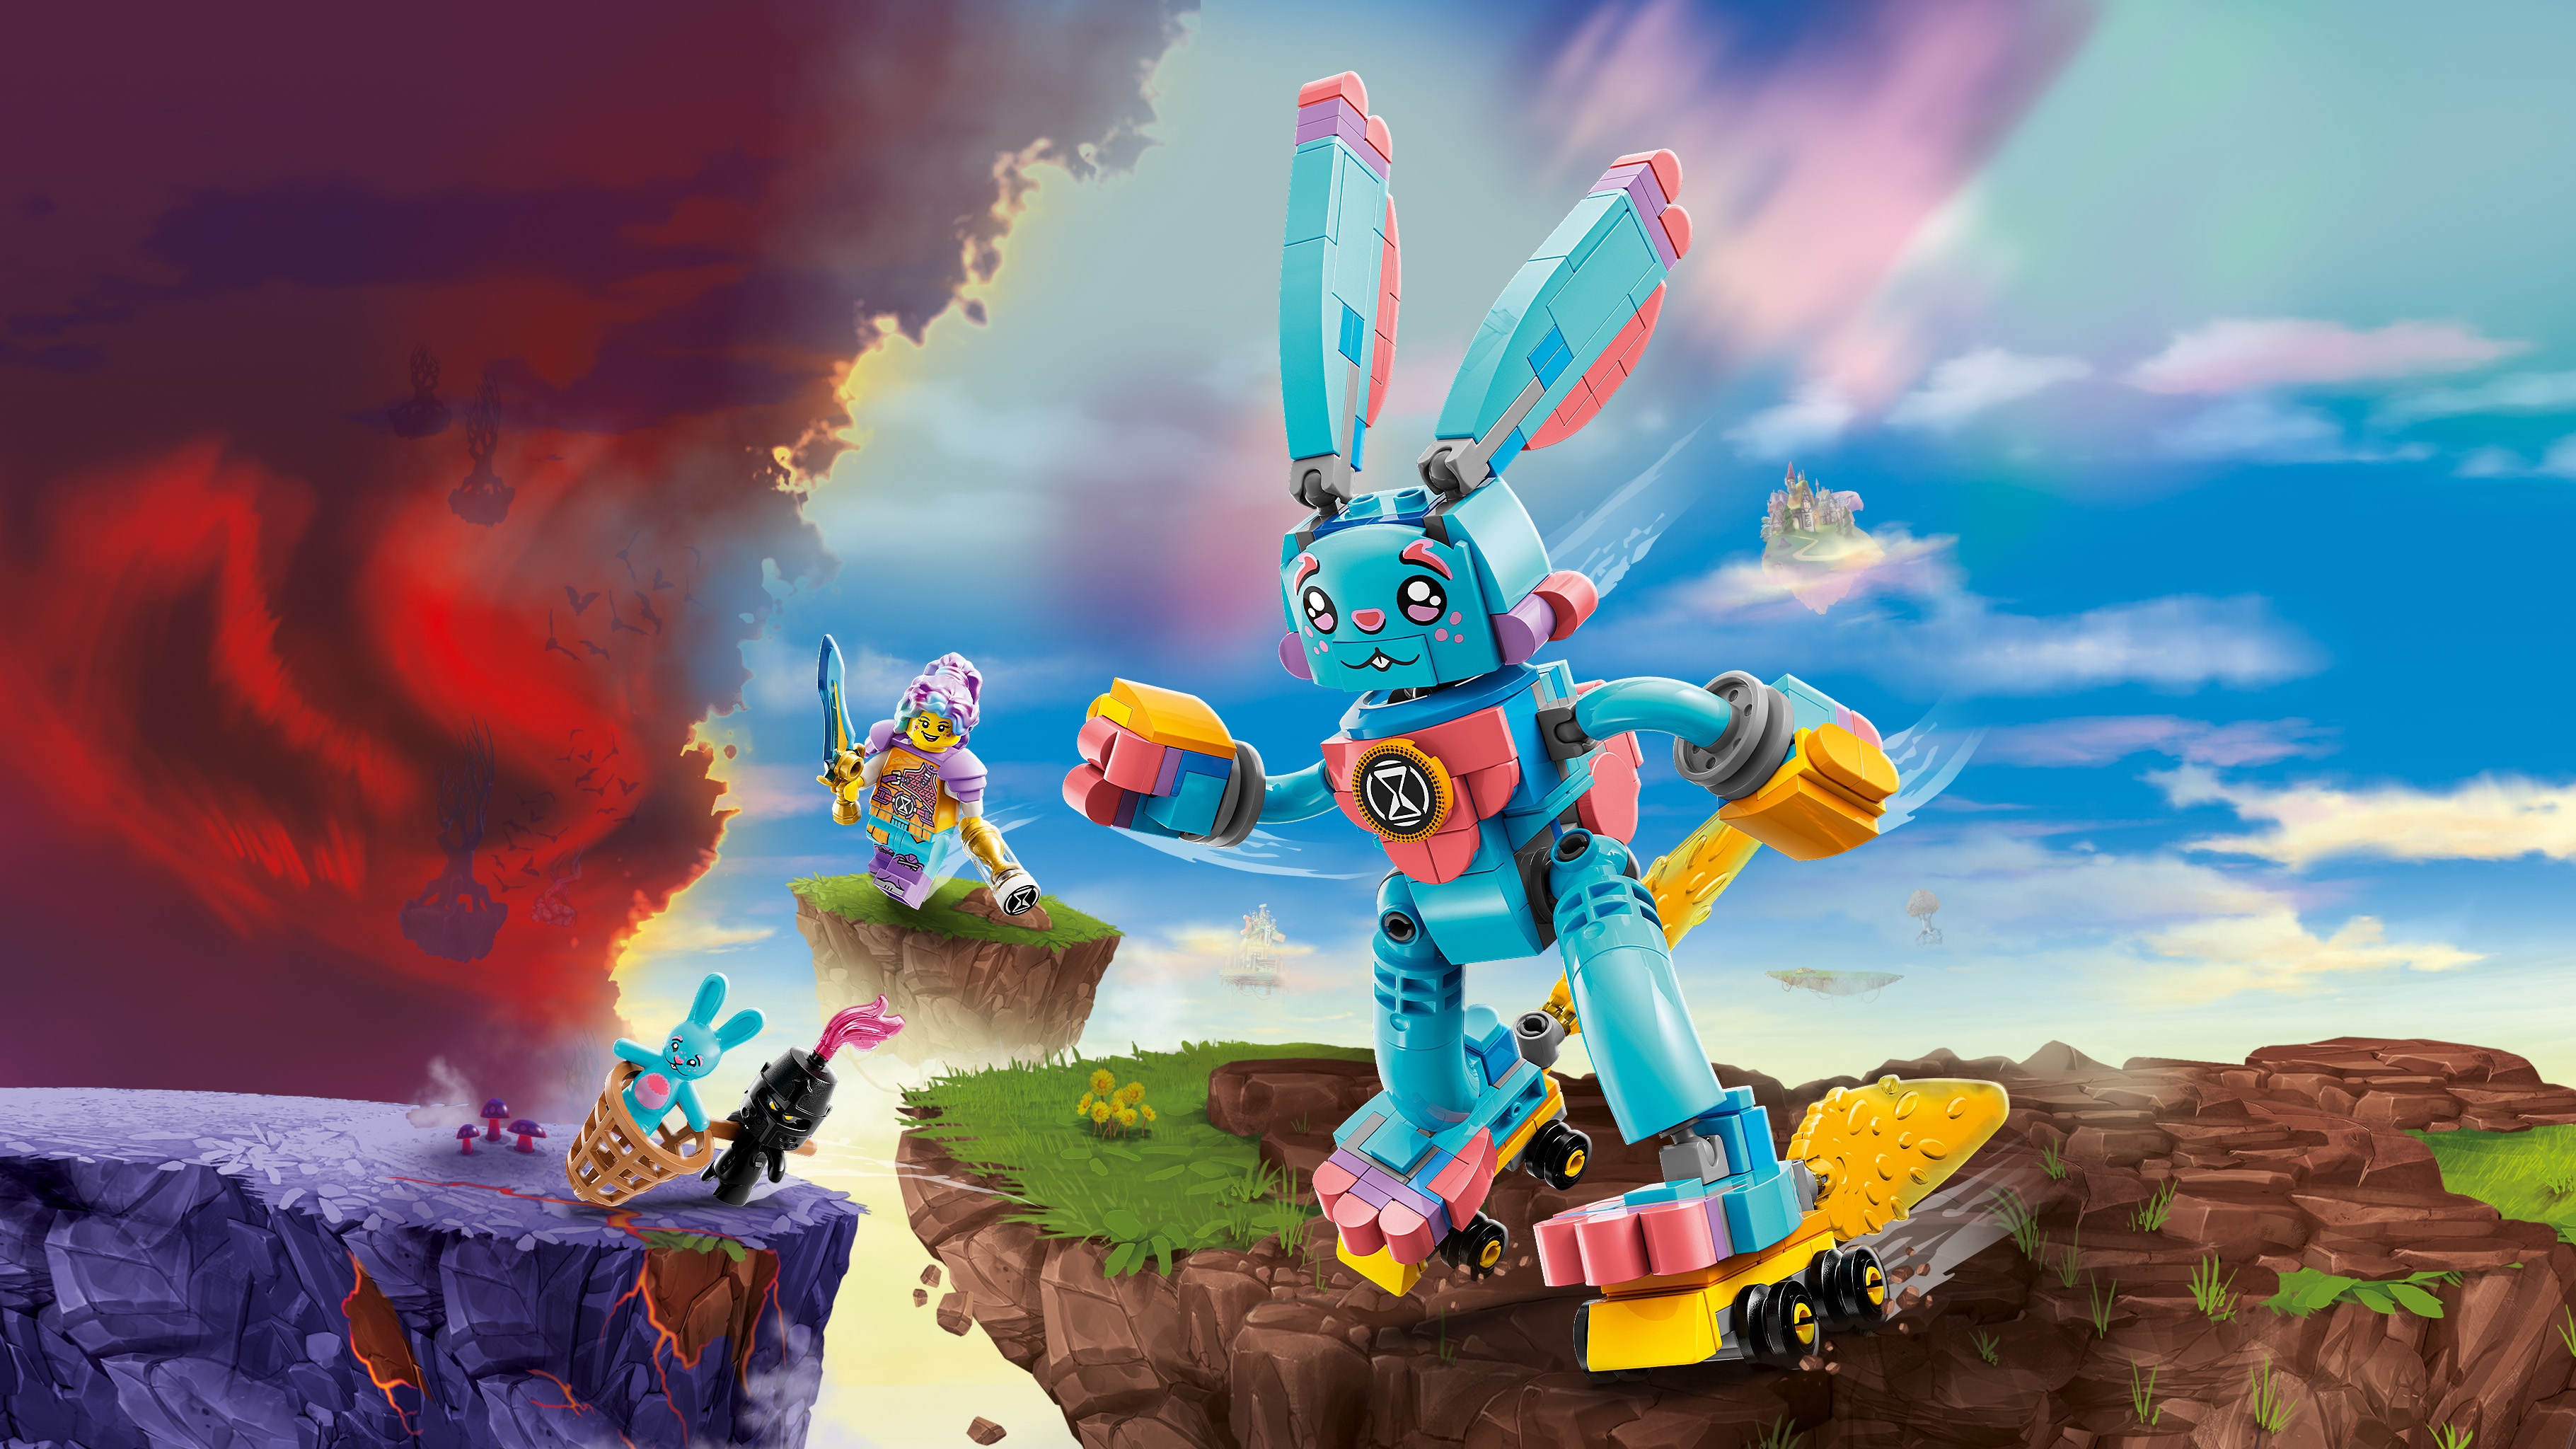 Izzie and Bunchu the Bunny 71453, LEGO® DREAMZzz™